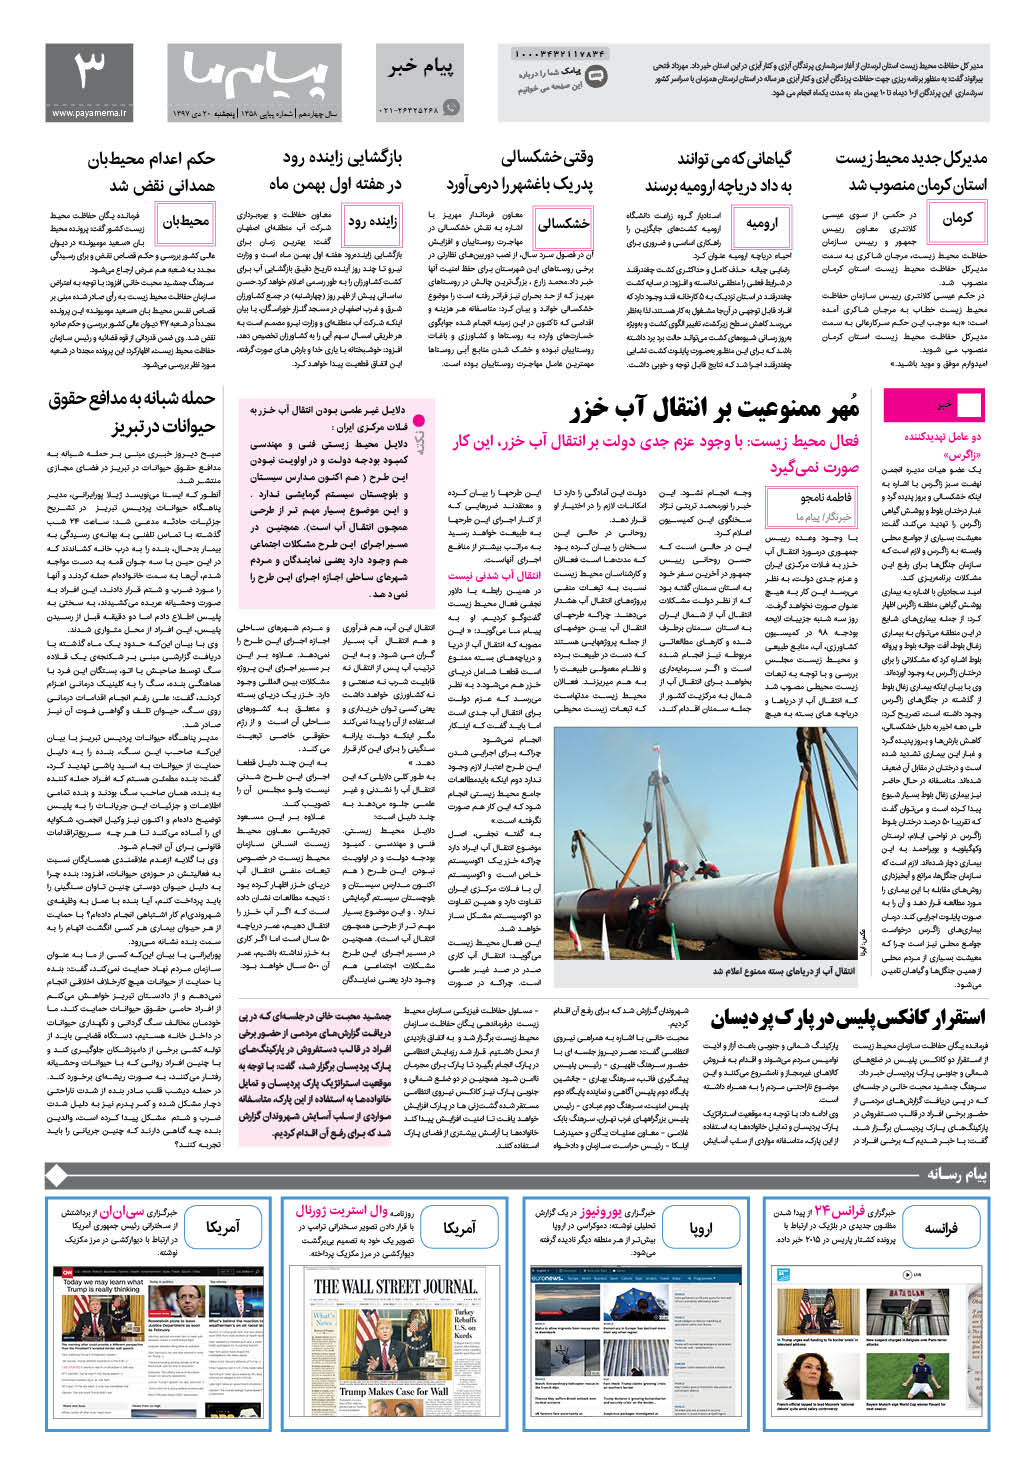 صفحه پیام خبر شماره 1358 روزنامه پیام ما